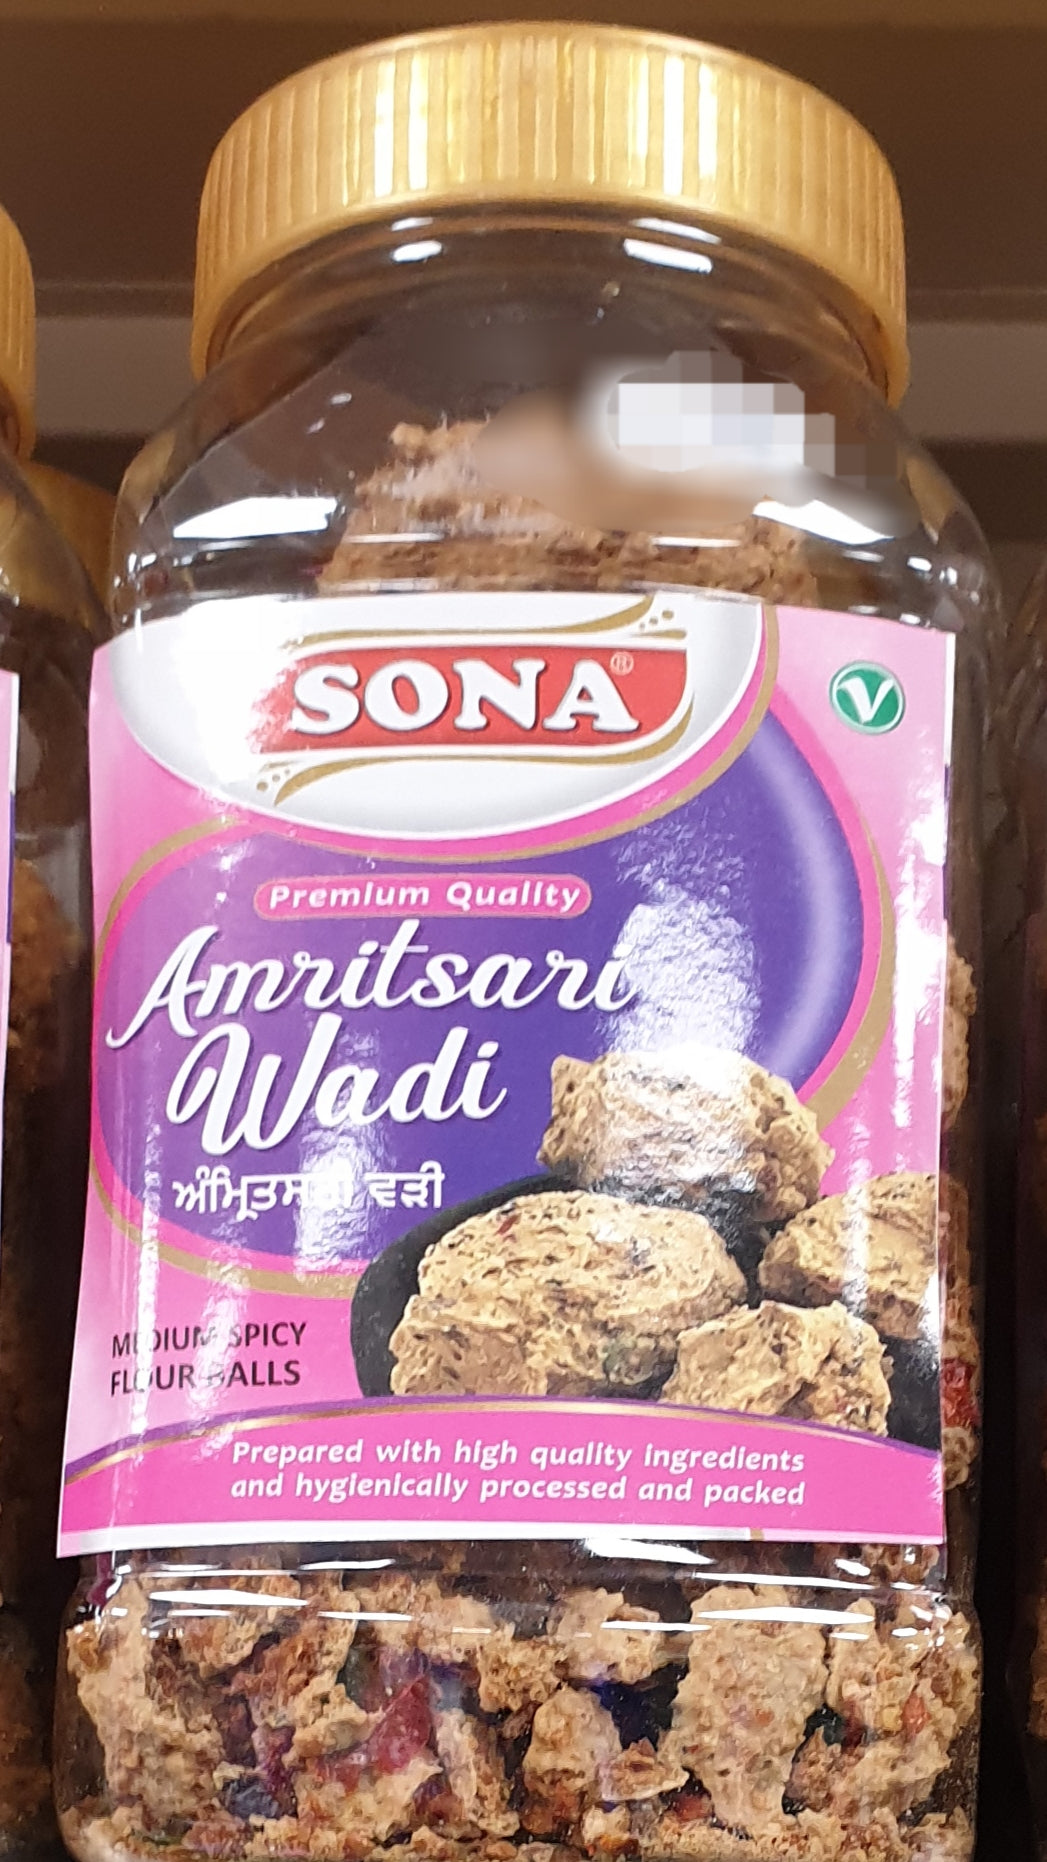 Sona Amritsari Wadi 400g Medium Spicy Flour Balls